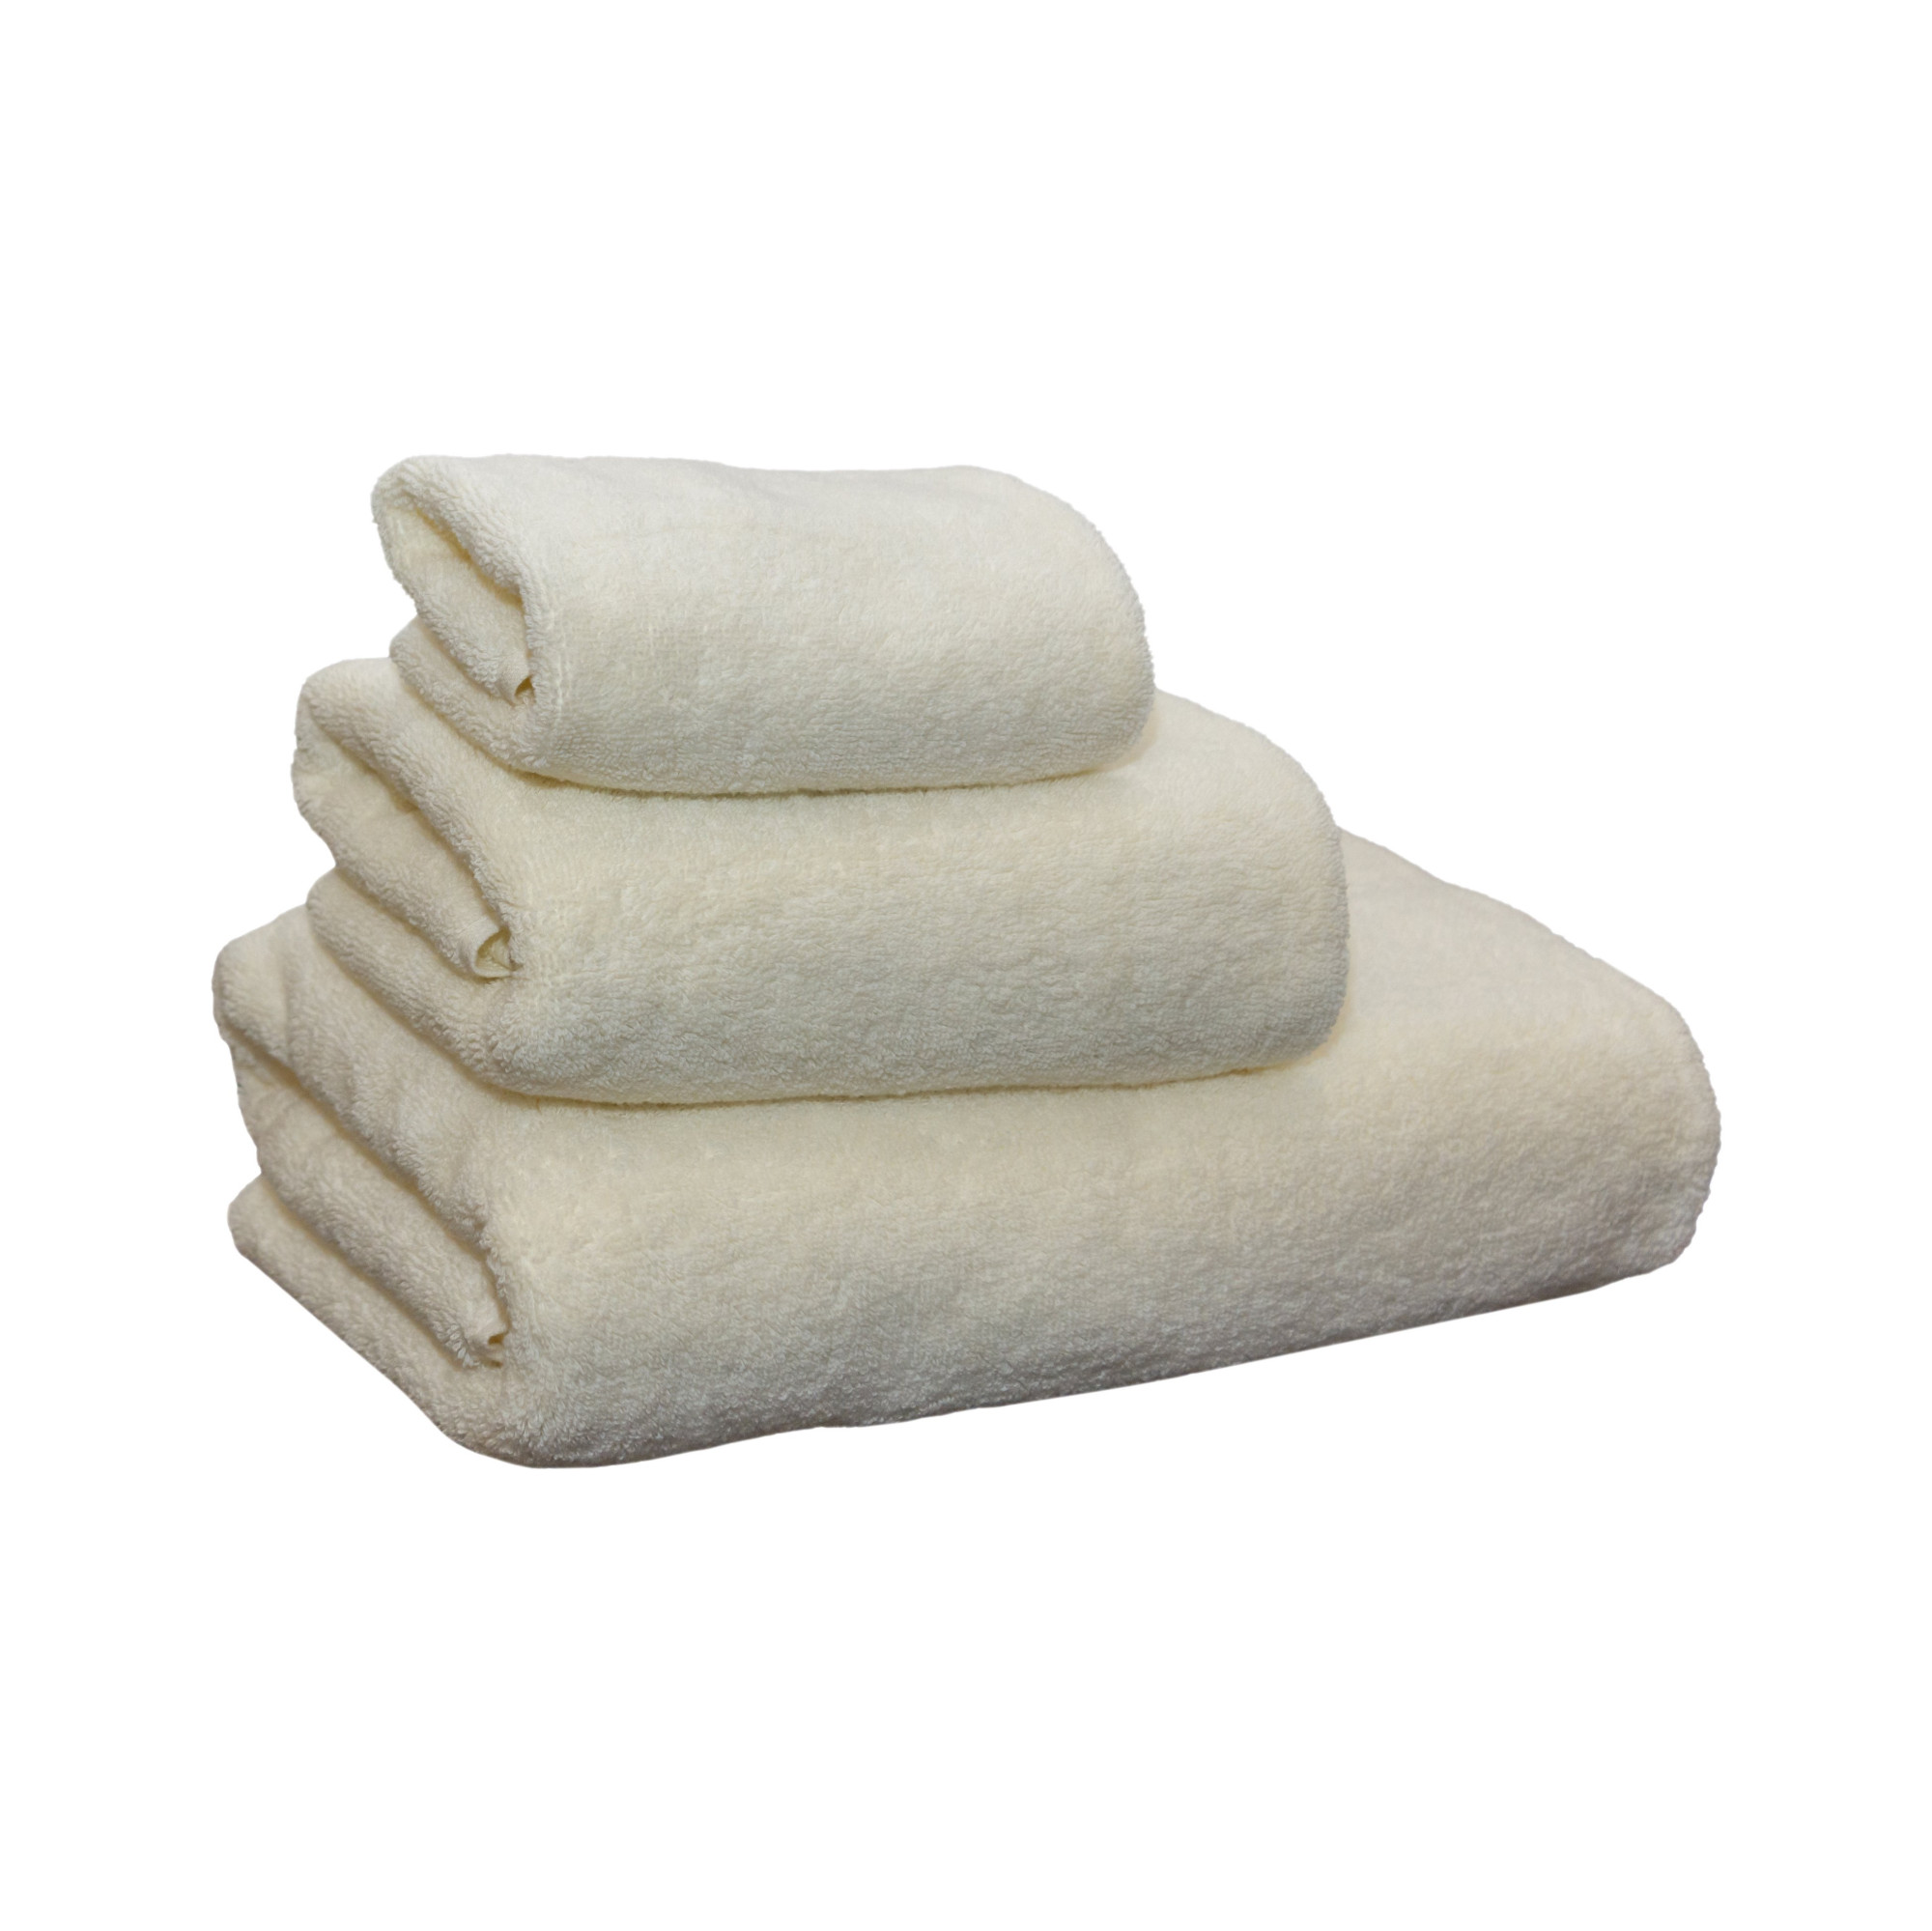 Terry towel 70X140, marshmallow, 100% cotton